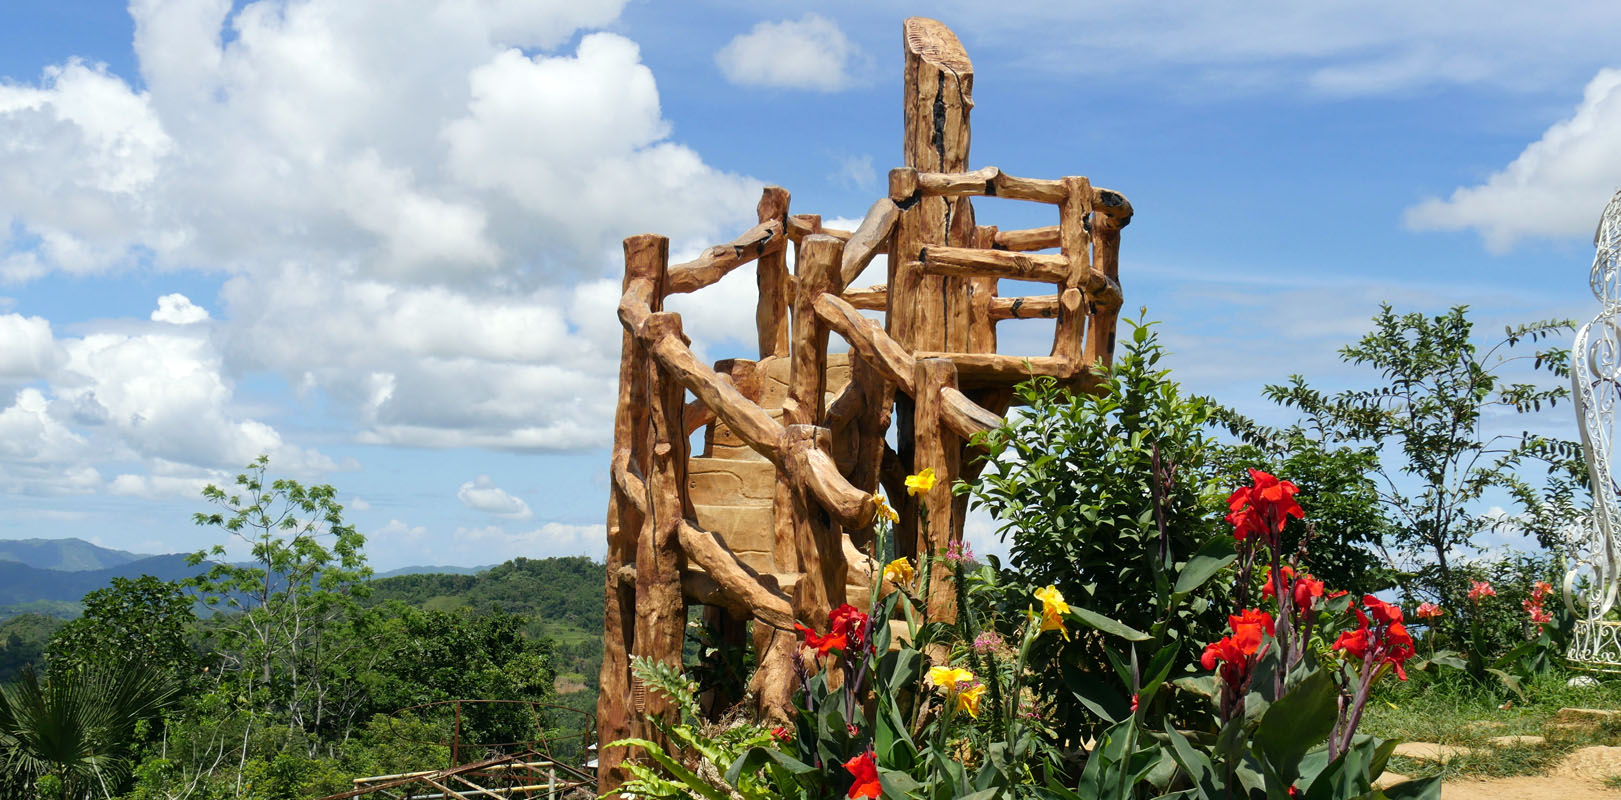 Best places to visit in Cebu - Sirao Flower Garden